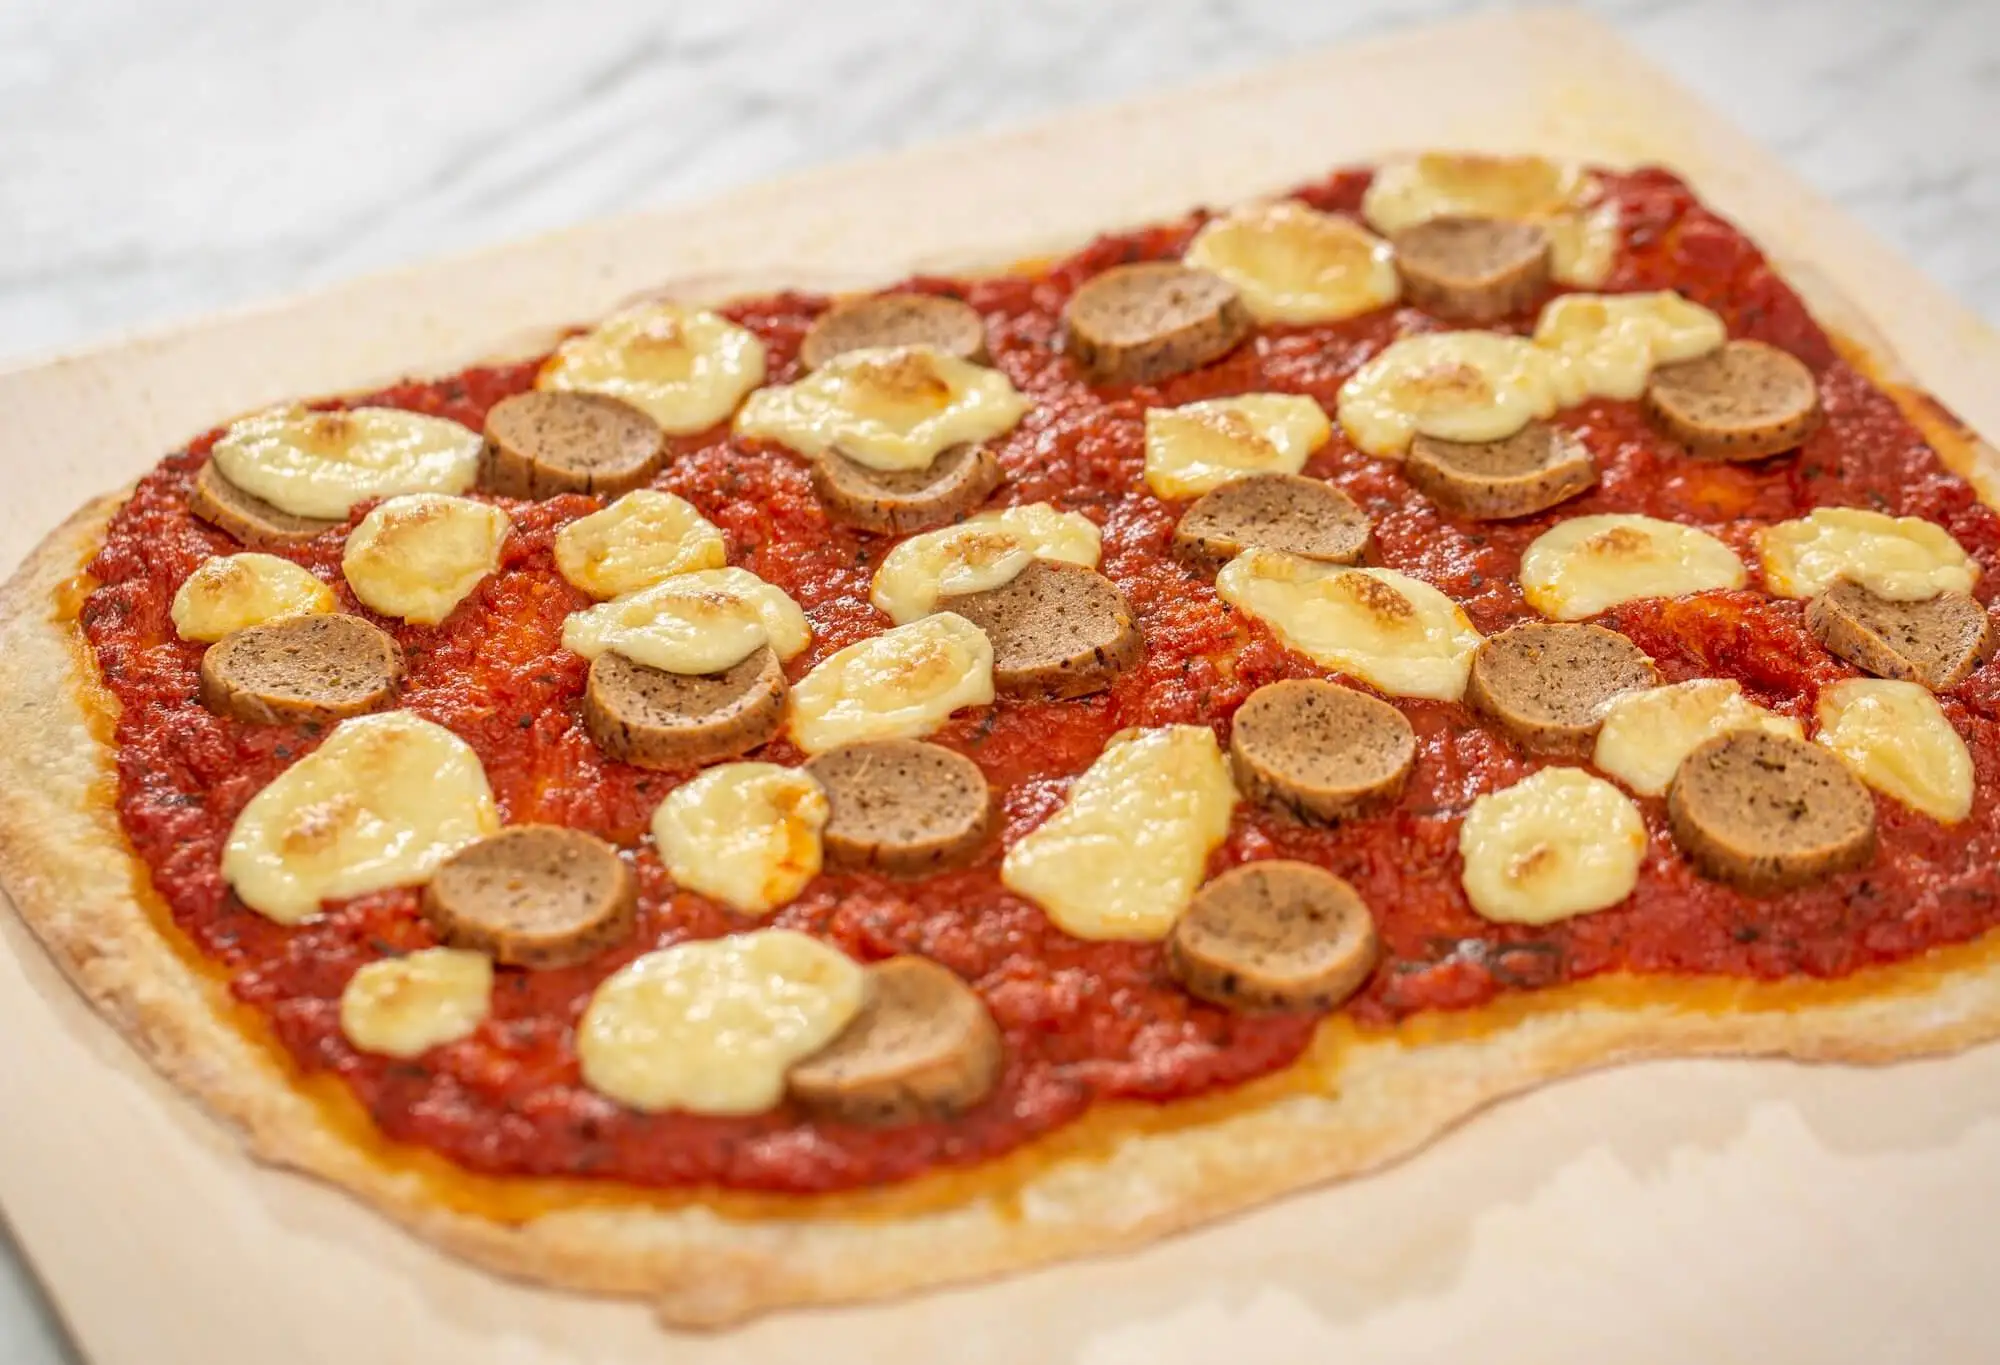 Vegan pizza with seitan Italian sausage and cashew mozzarella cheese